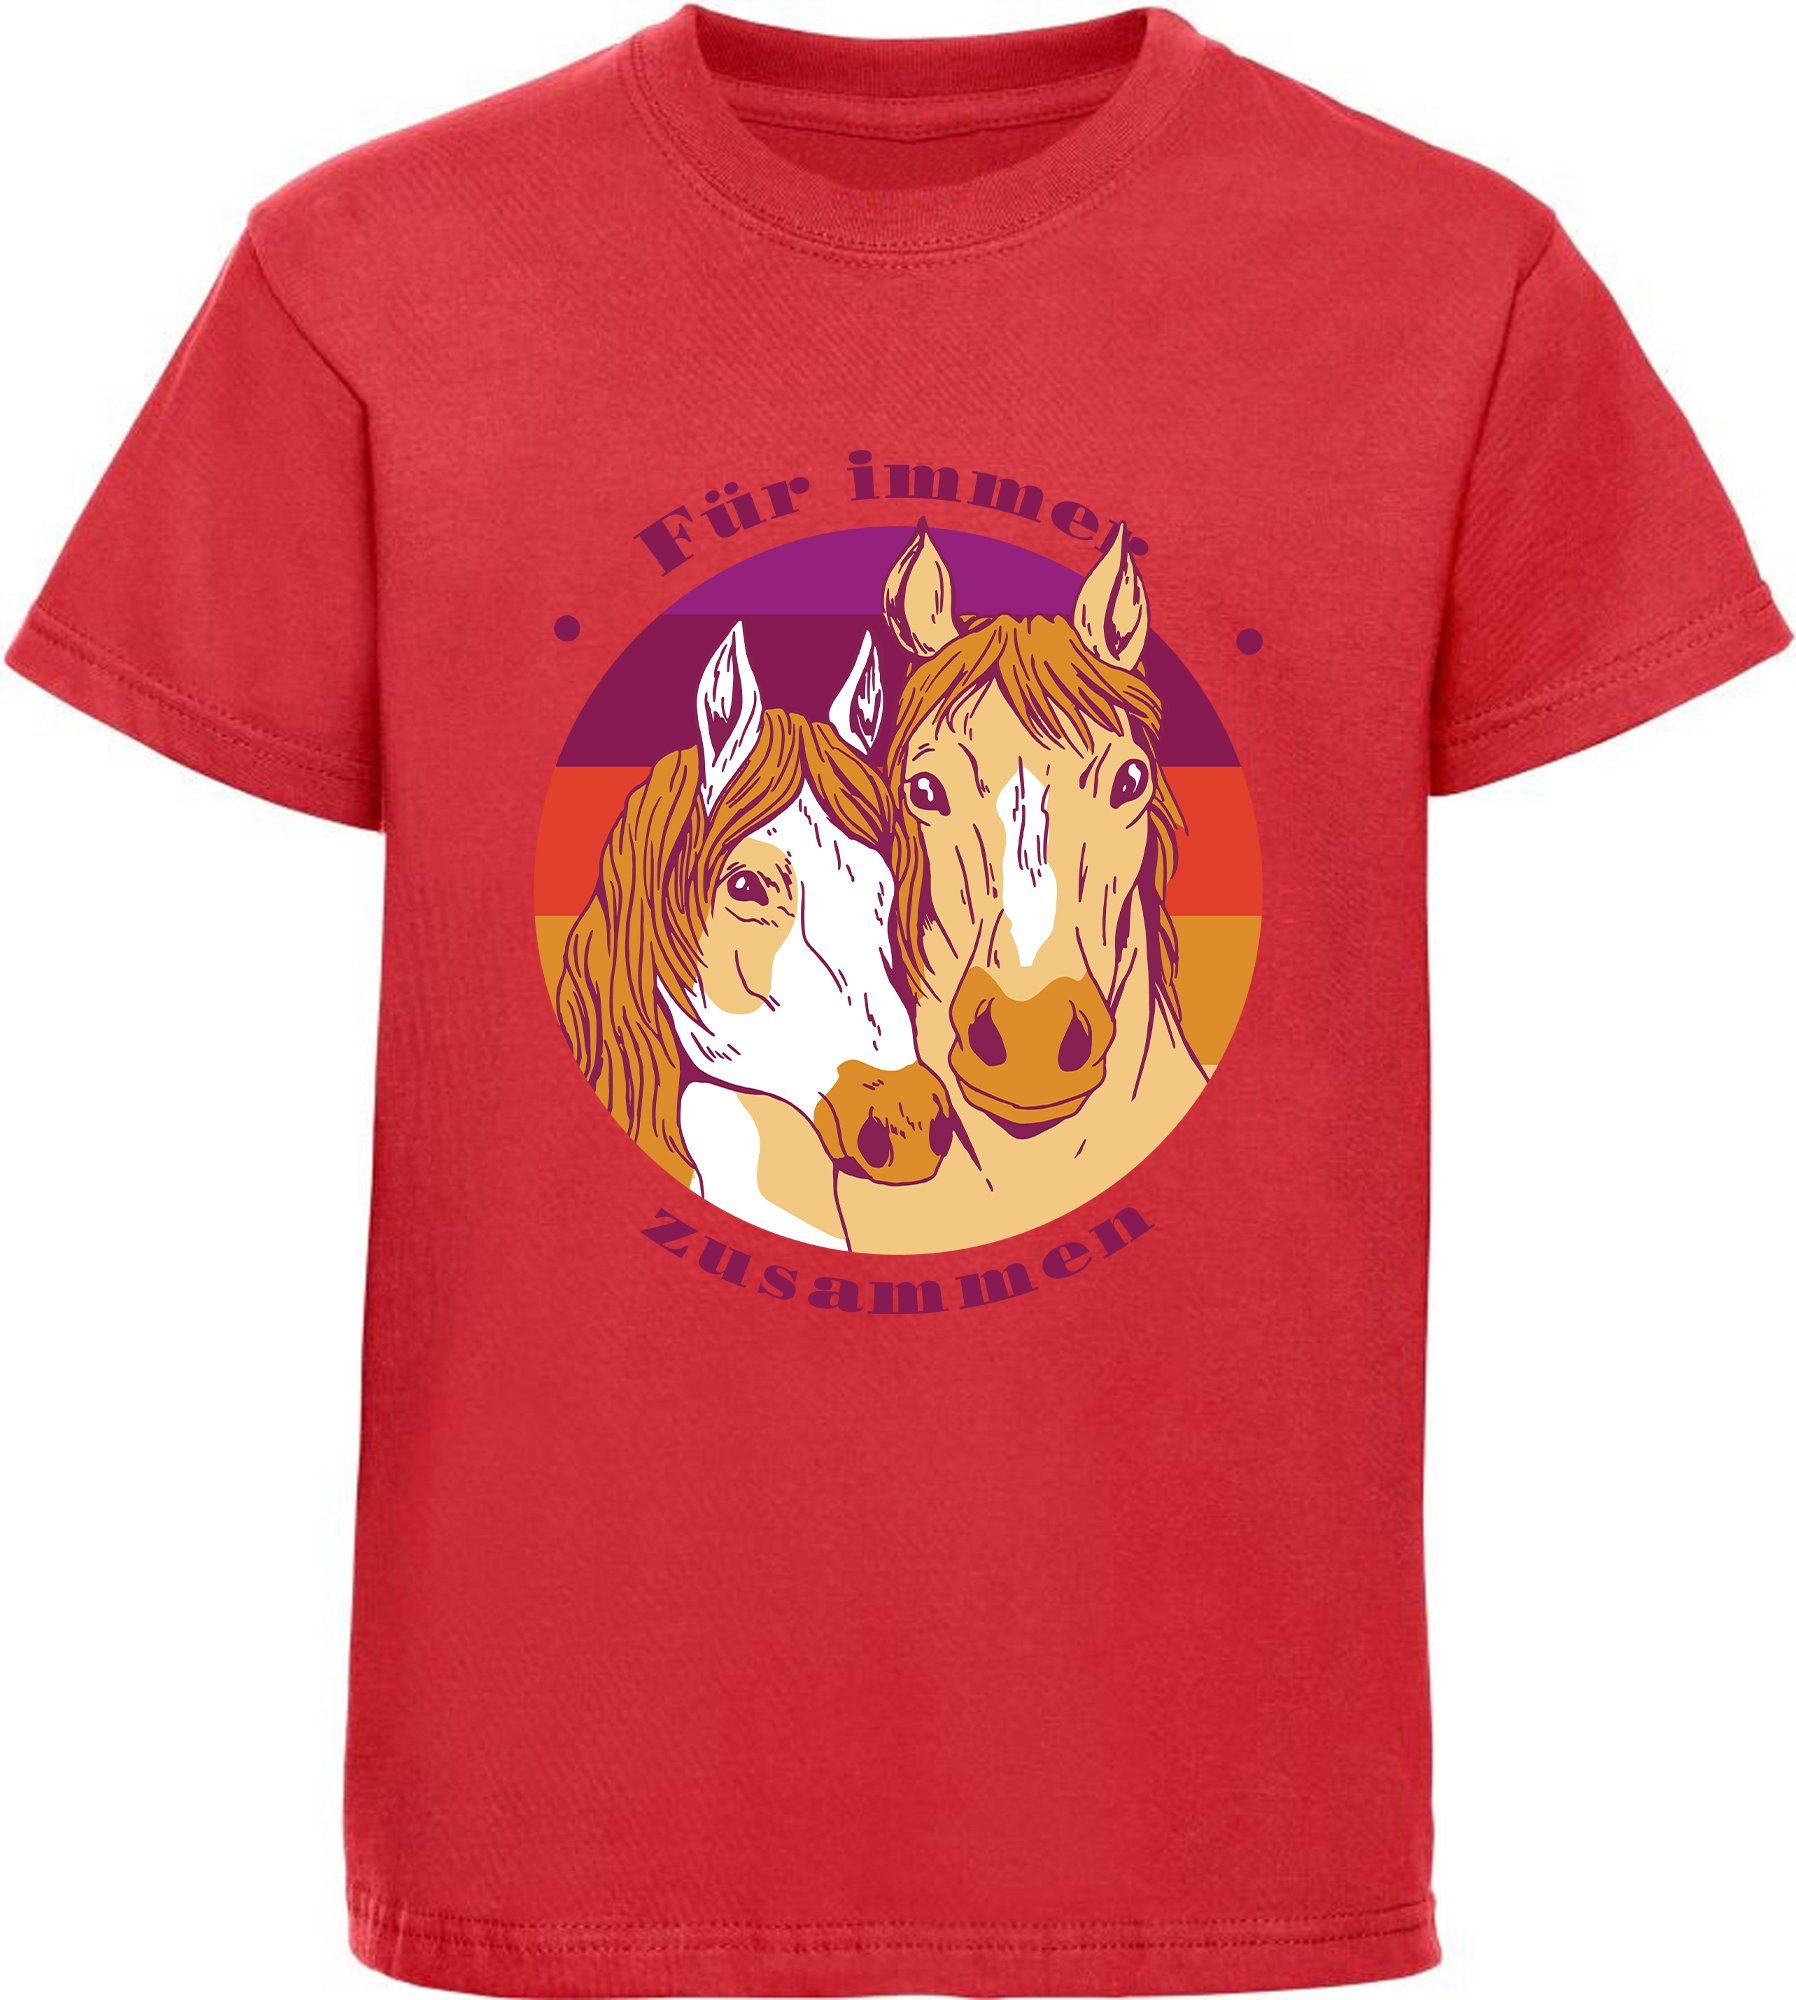 MyDesign24 Print-Shirt bedrucktes Mädchen T-Shirt zwei Pferdeköpfe Baumwollshirt mit Aufdruck, i148 rot